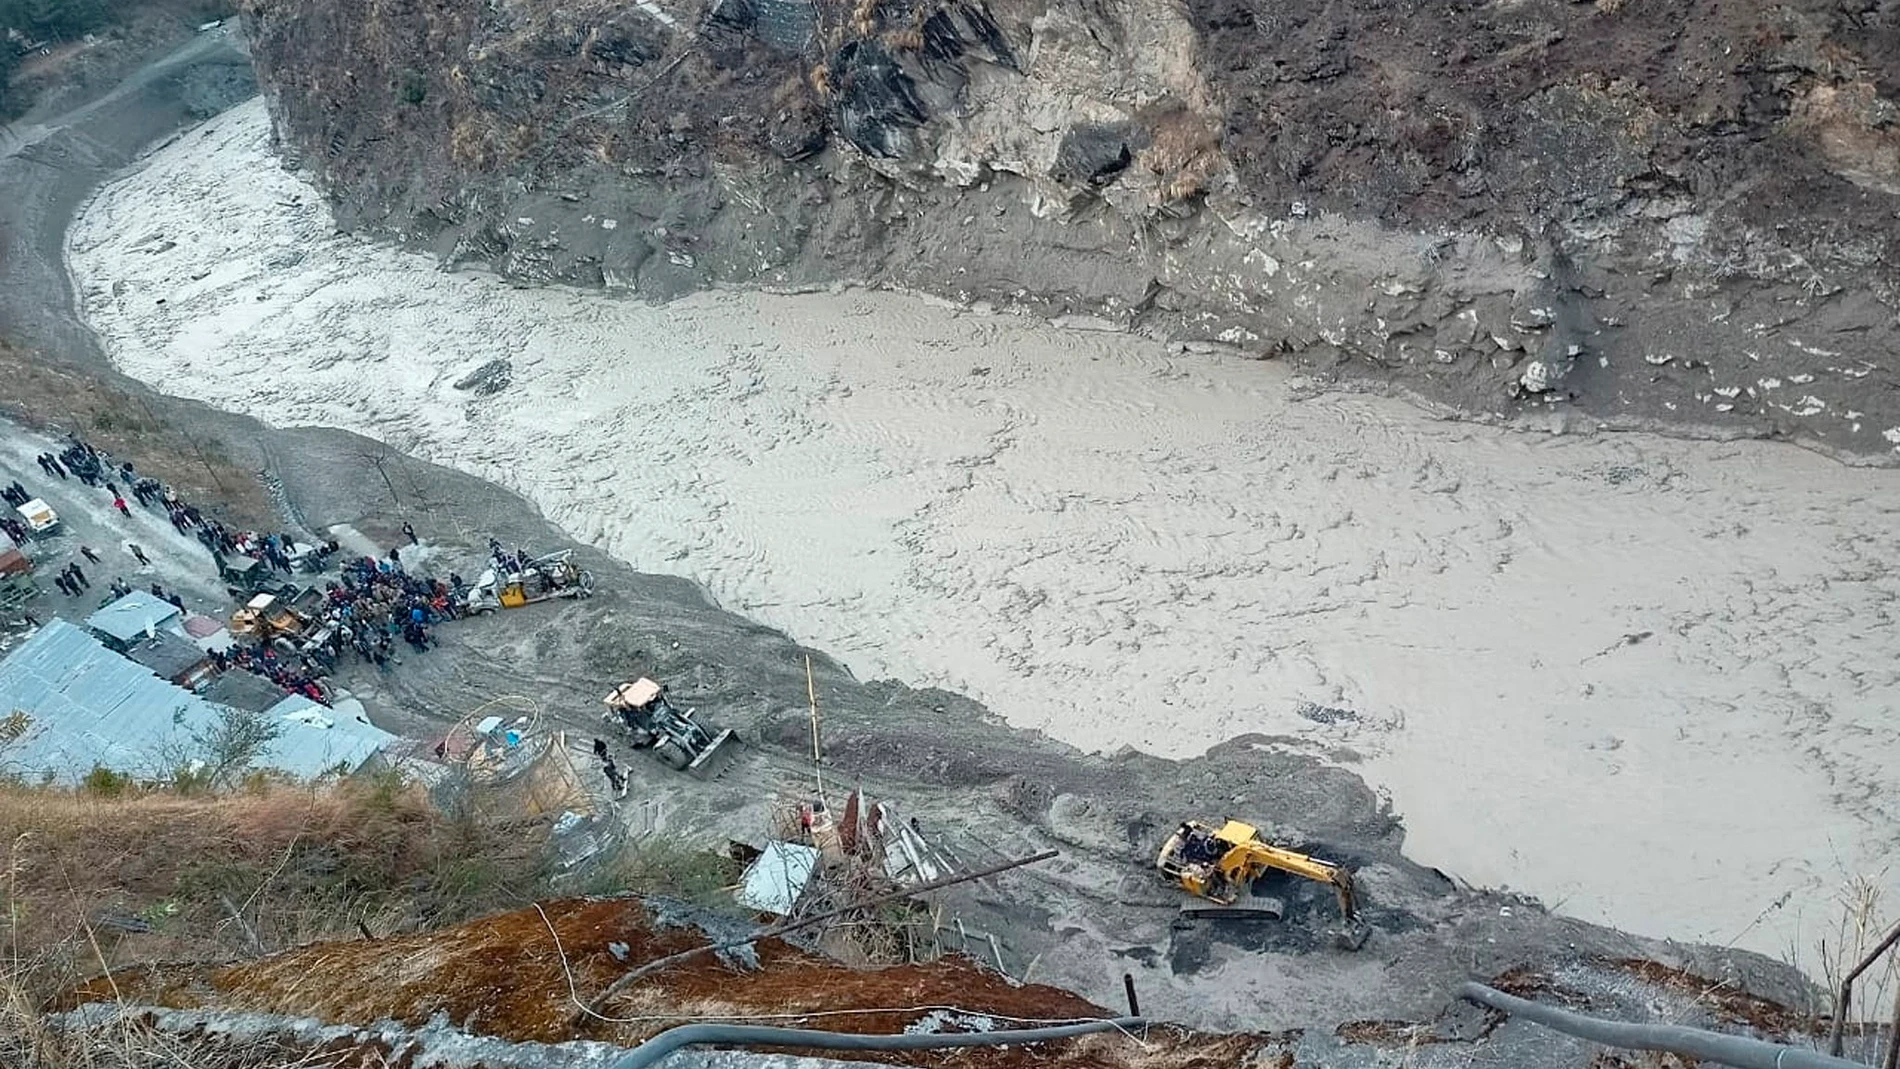 Riada provocada por la rotura de un glaciar en India